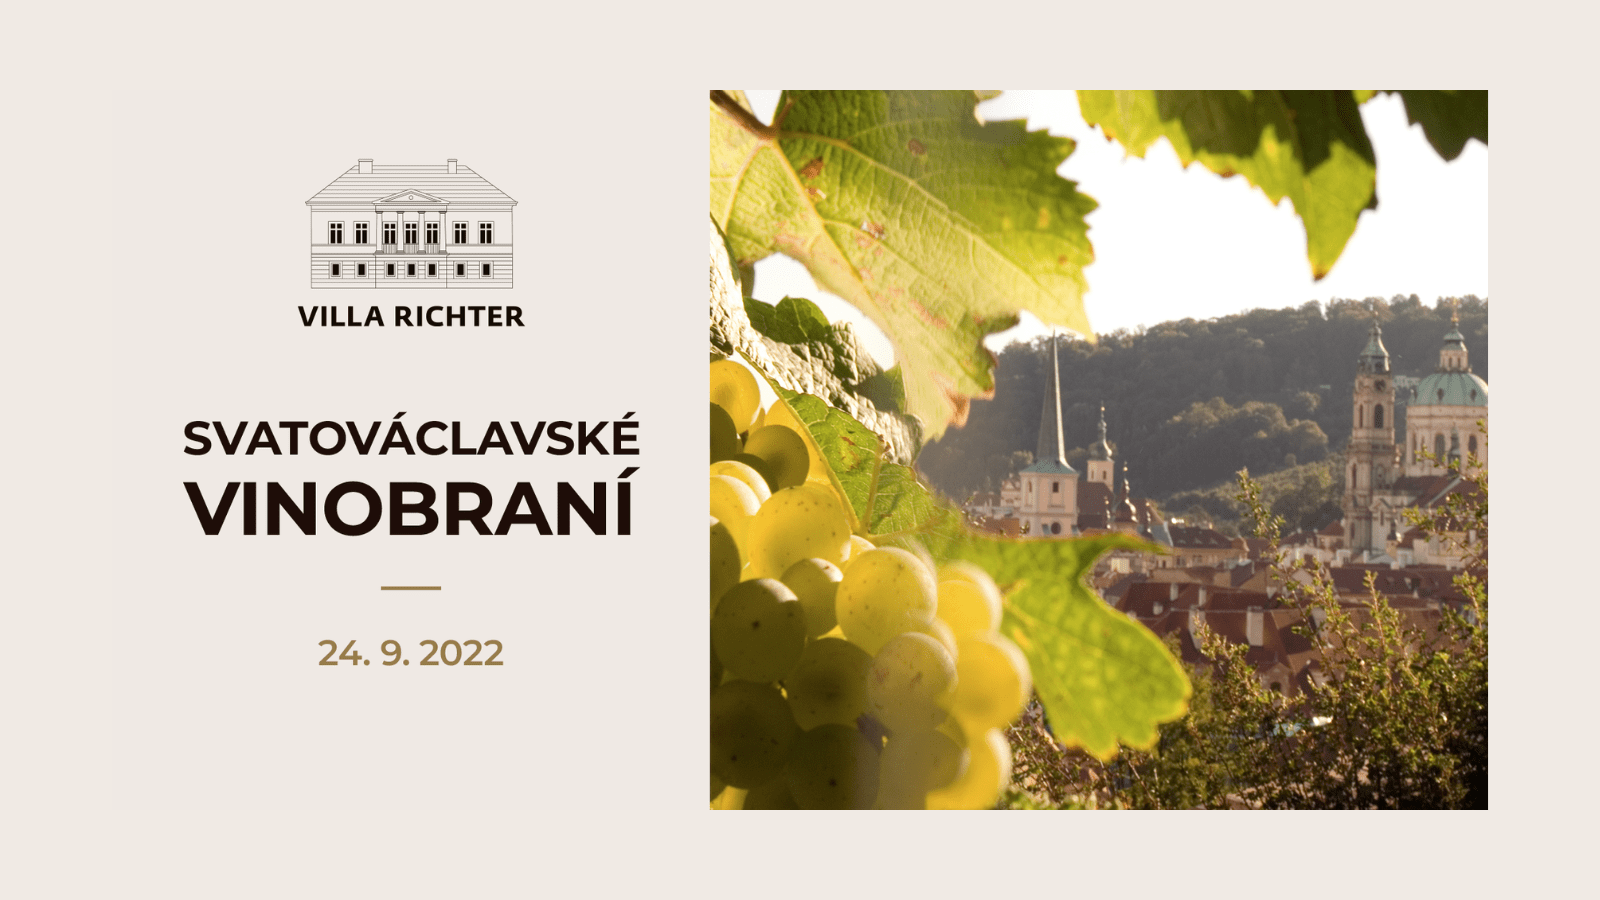 Svatovaclavske vinobrani 2022 Villa Richter Praha